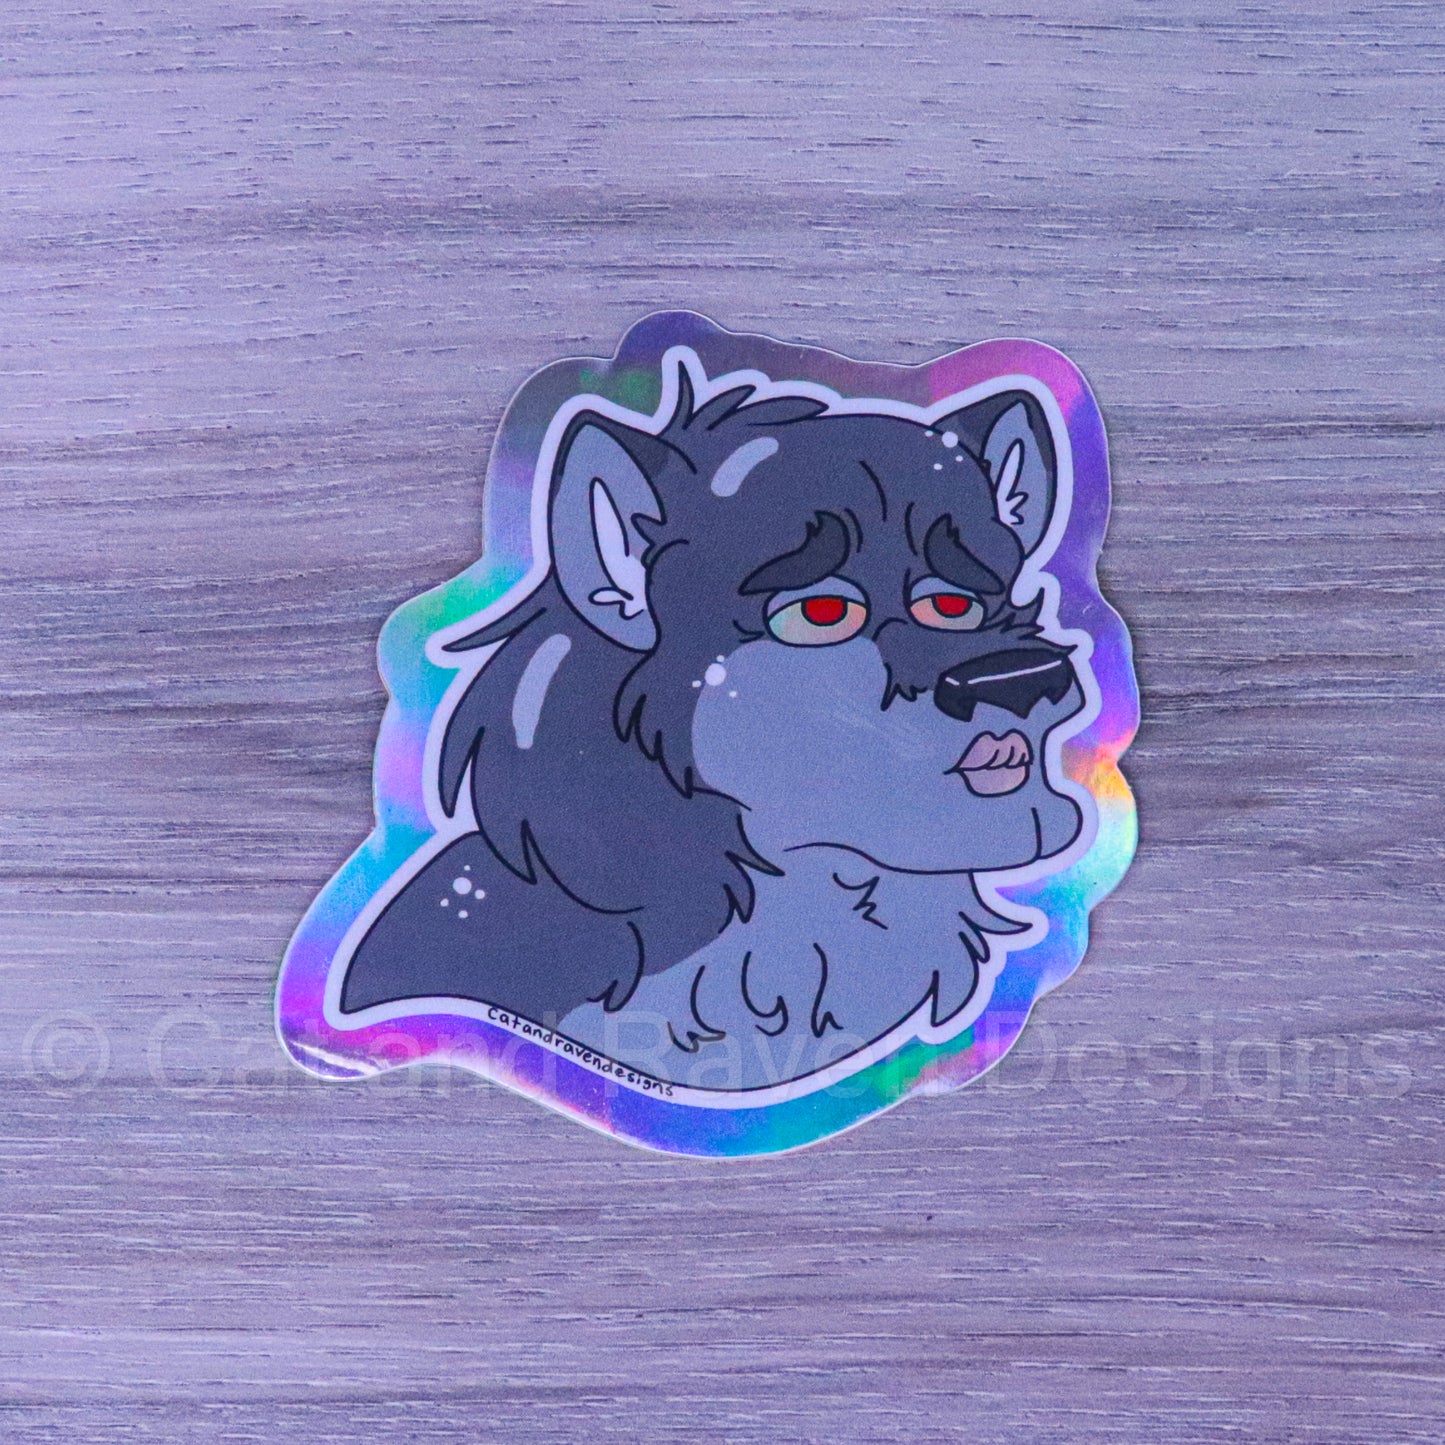 Handsome Werewolf Cryptid cuties vinyl stickers